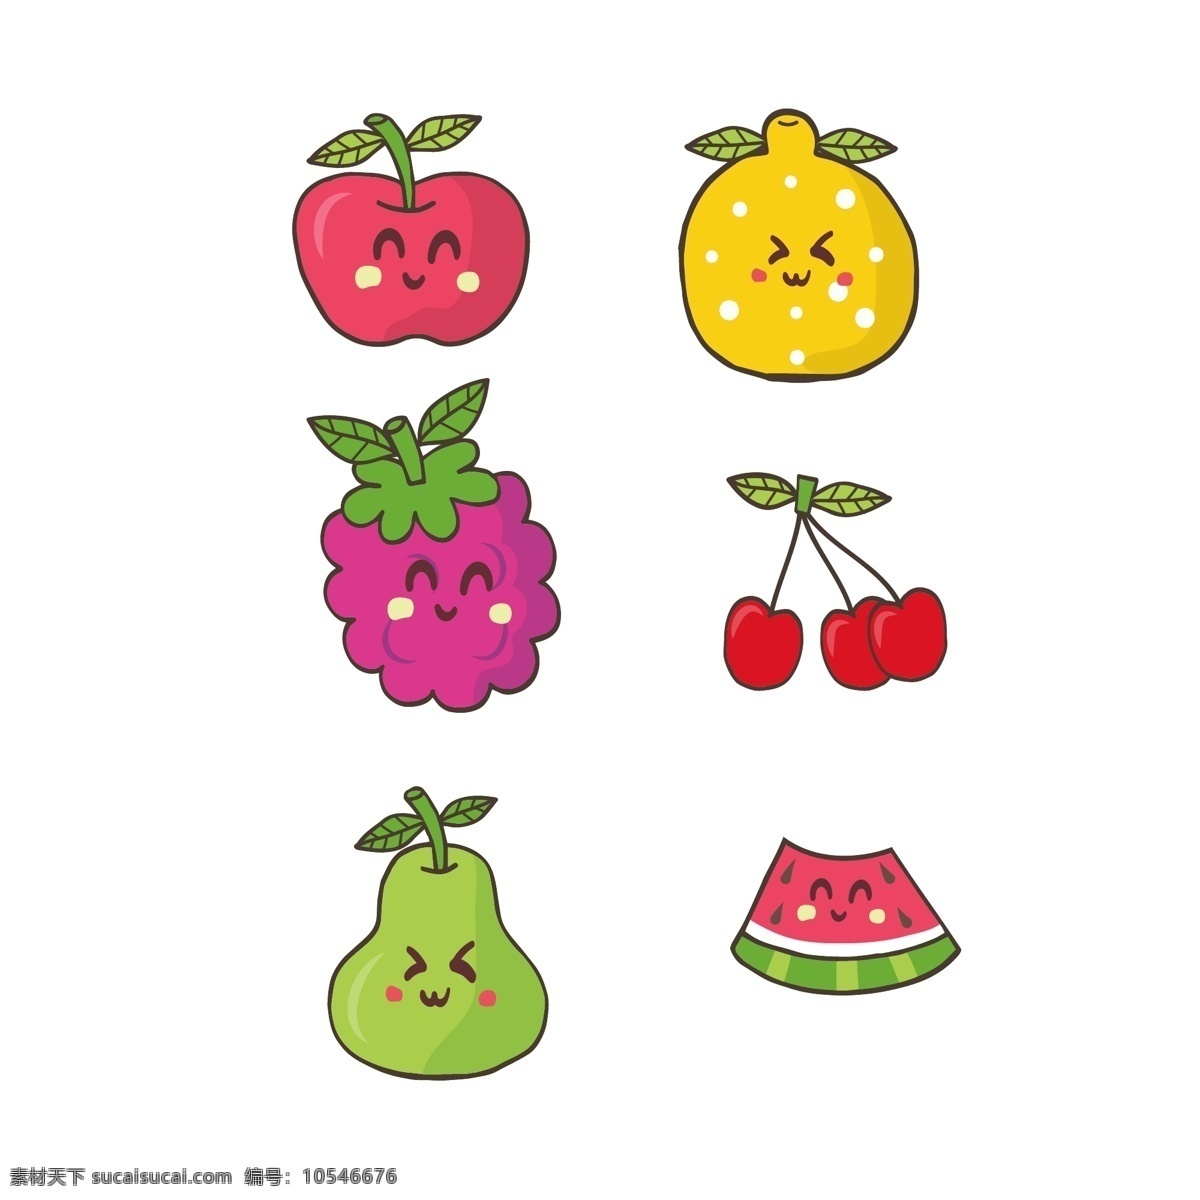 卡通 风格 手绘 彩色 夏季 水果 元素 西瓜 樱桃 苹果 鸭梨